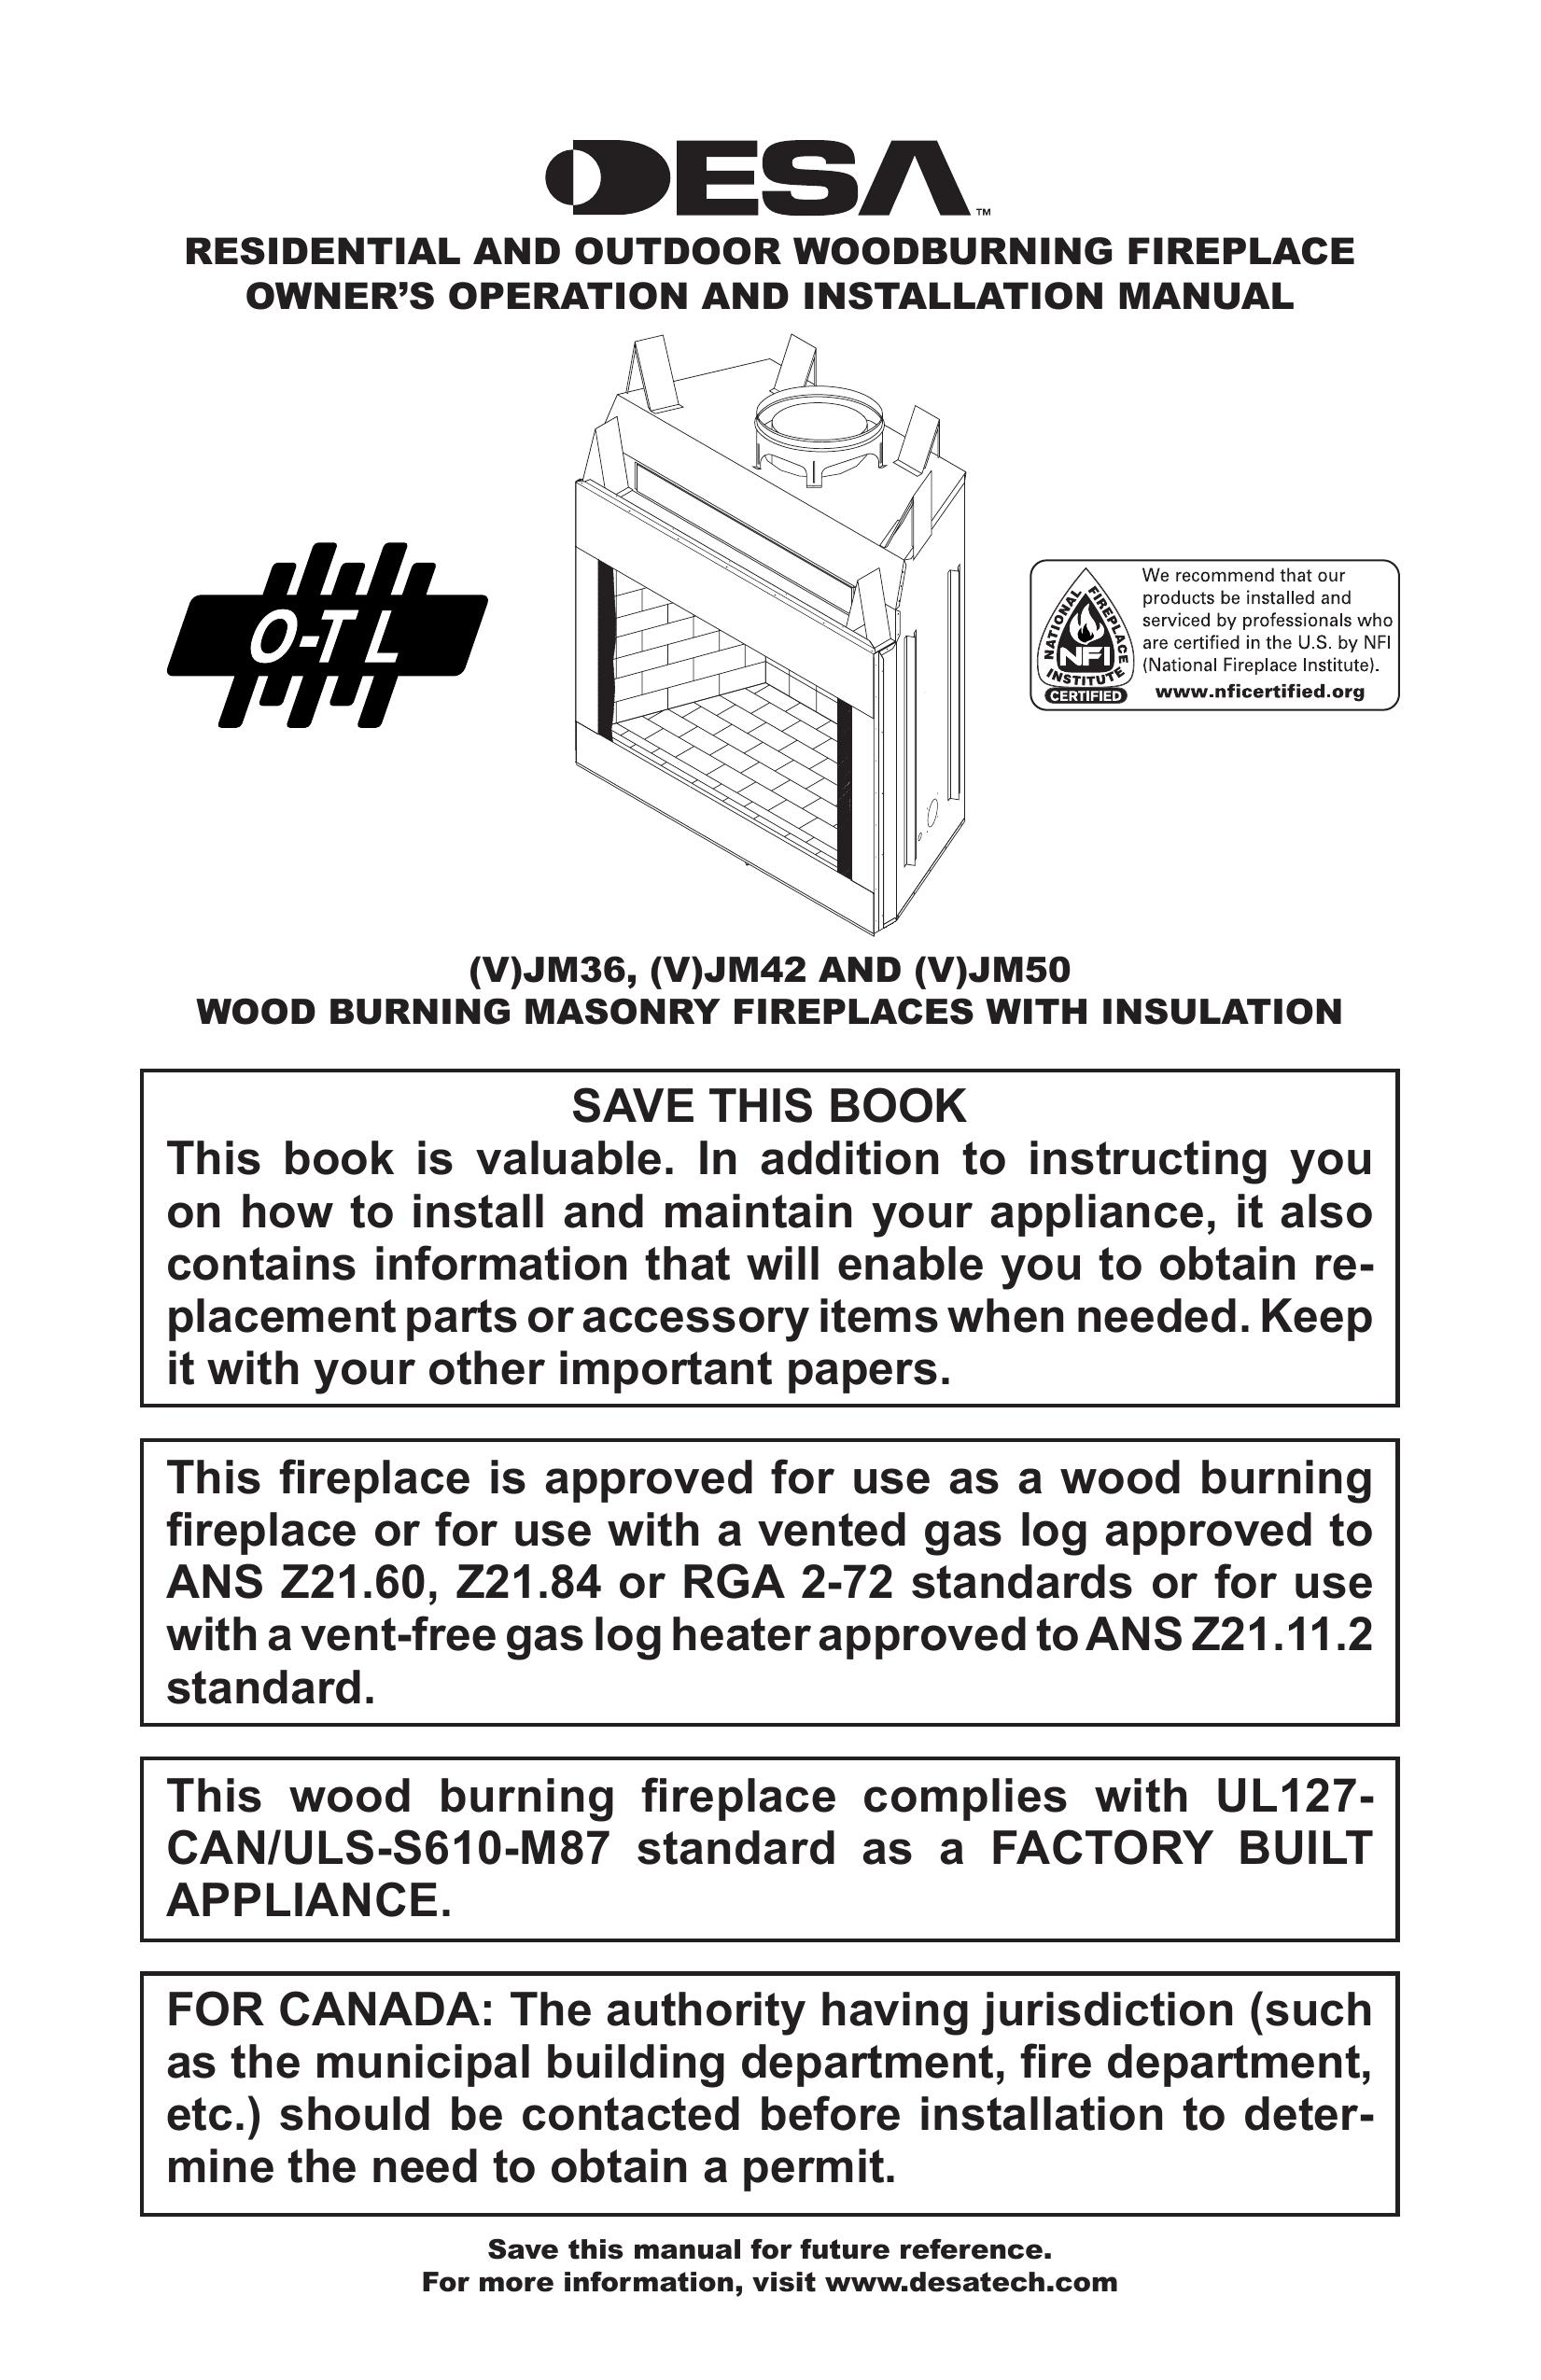 Desa (V)JM50 Outdoor Fireplace User Manual